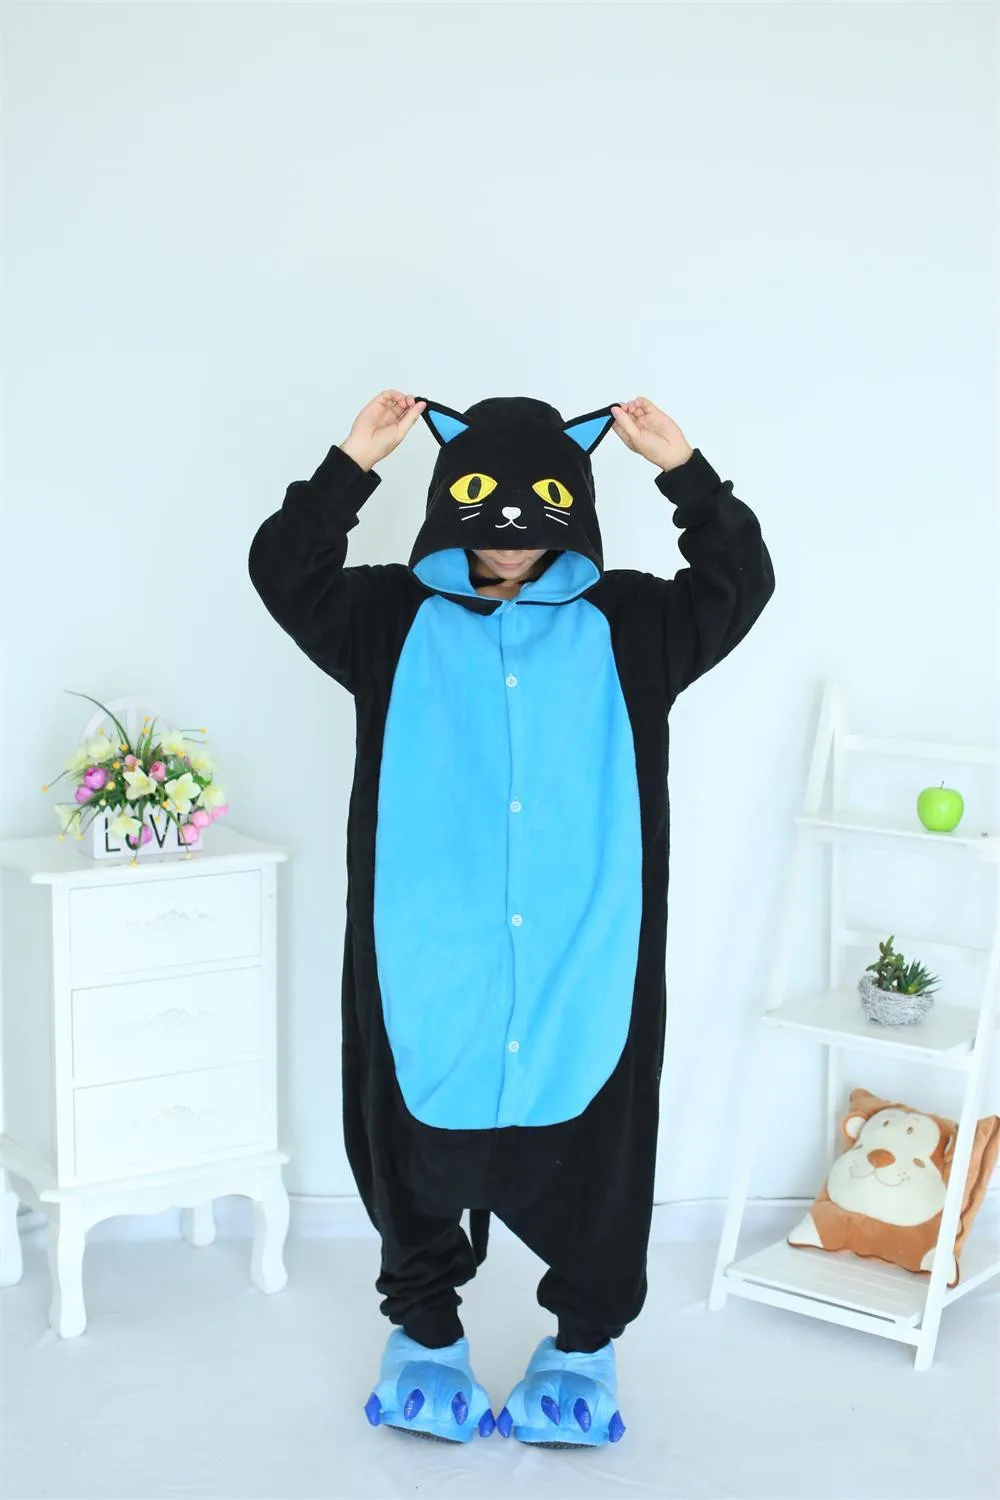 Unisex Animal Pijama Ropa de Dormir Cosplay Kigurumi Onesie Pingüino Negro Disfraz para Adulto Entre 1,40 y 1,87 m 